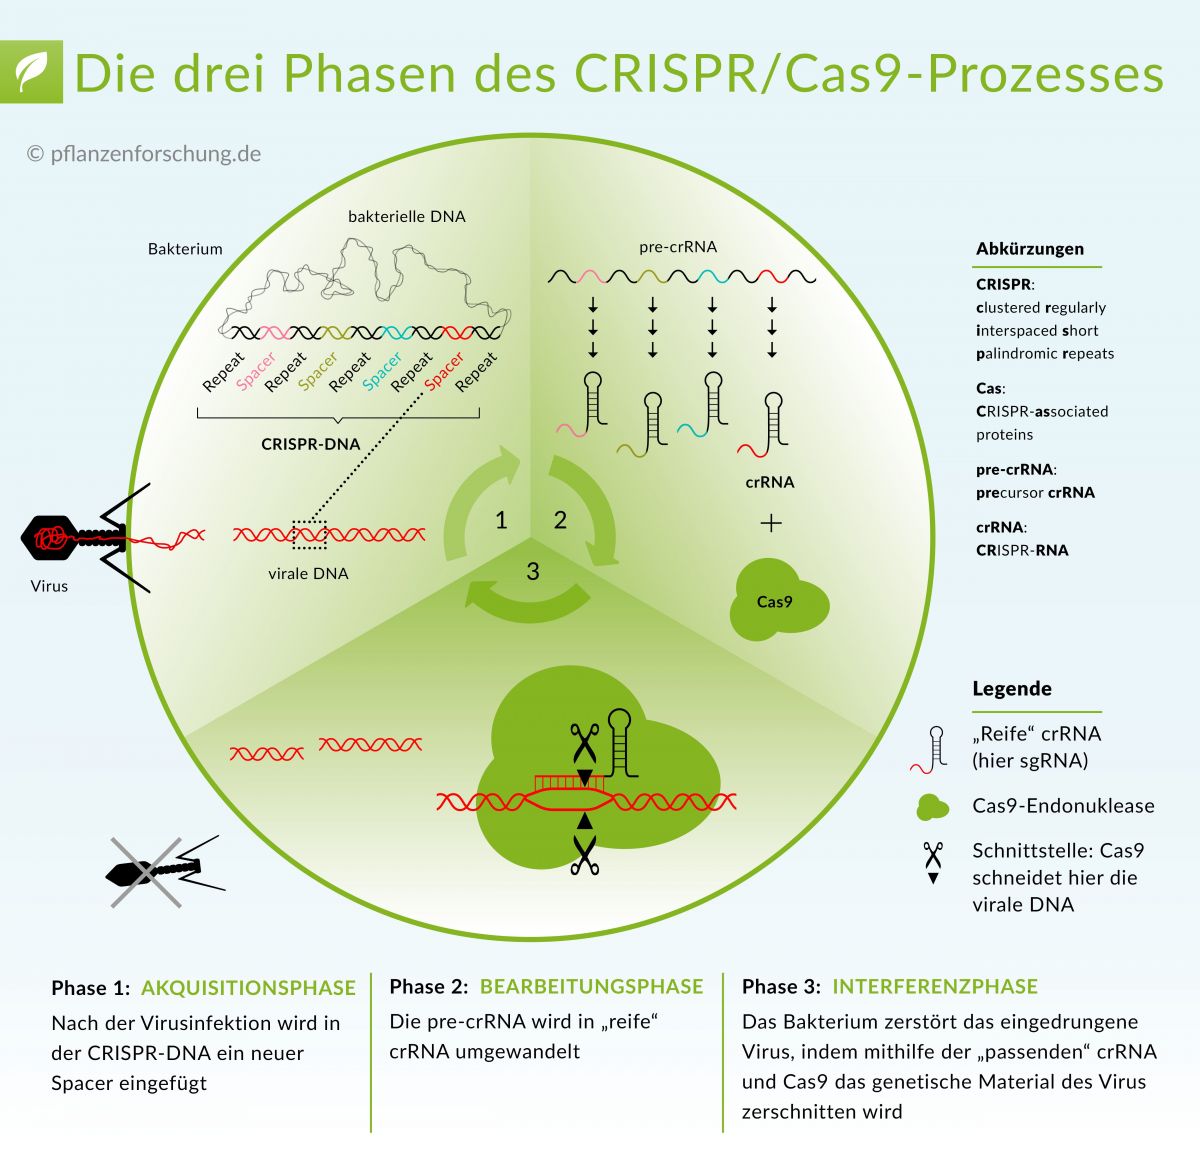 CRISP/Cas9: Lesen Sie mehr darüber, wie diese neue Technologie auf molekularer Ebene funktioniert: "Wie CRISPR/Cas funktioniert"
